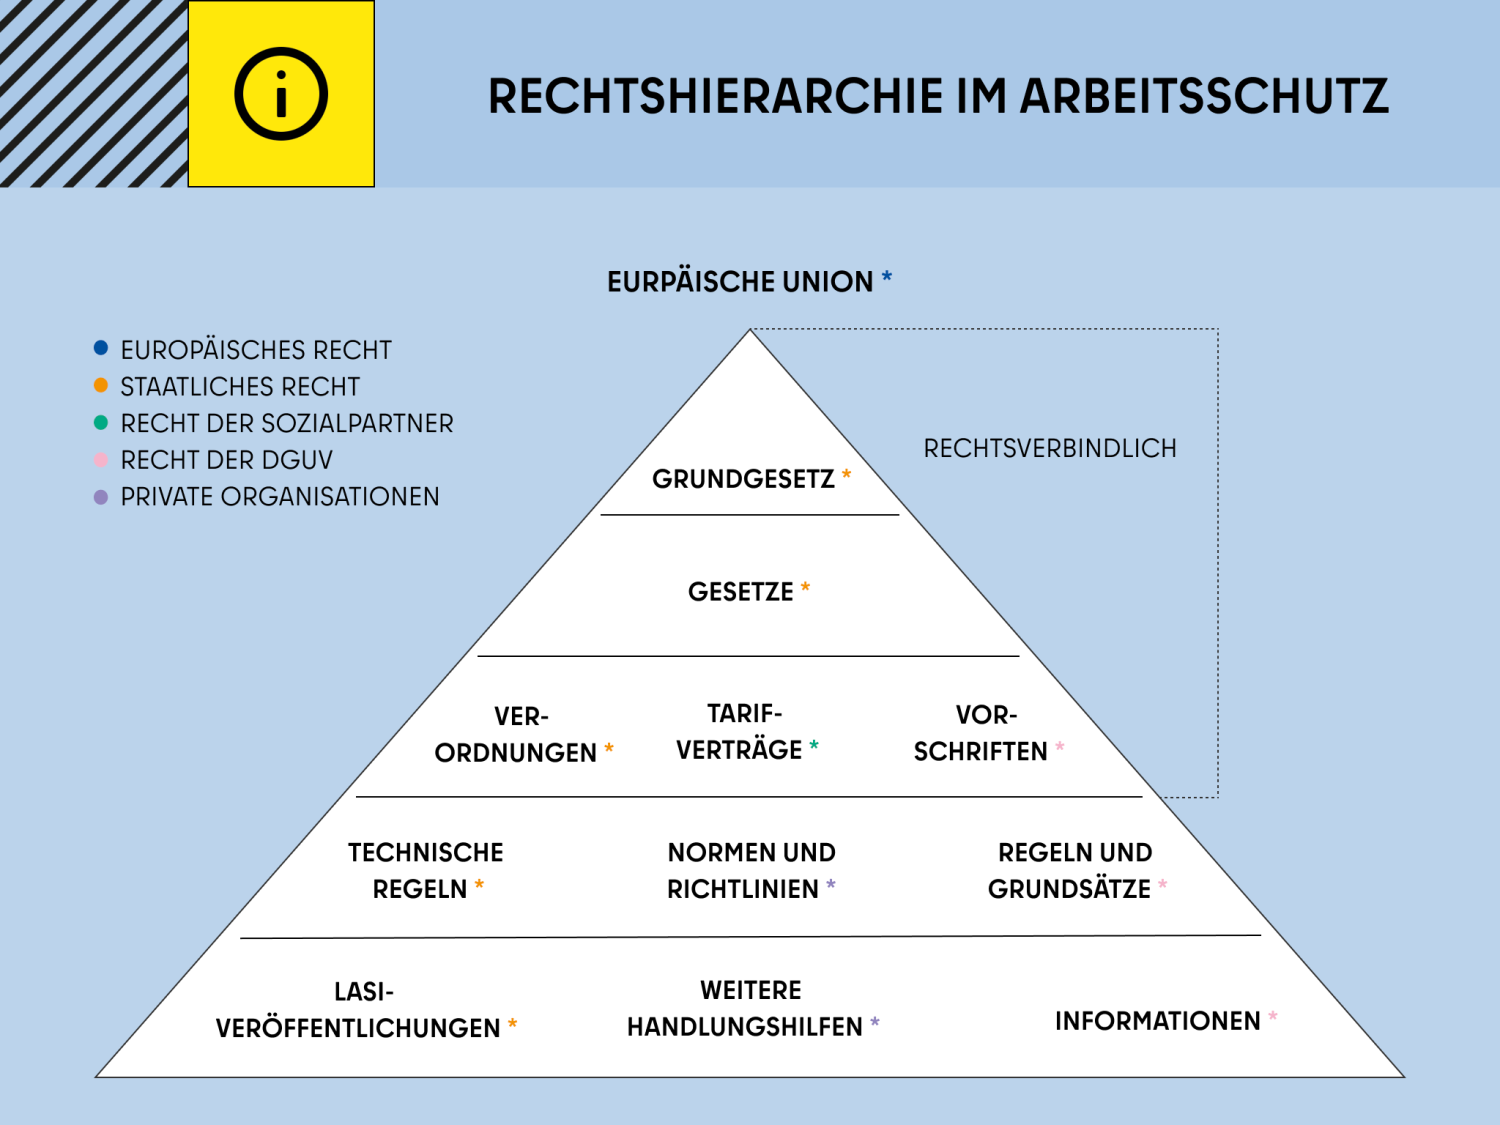 Pyramide der Rechtshierarchie im Arbeitsschutz. Zusammenhang und Abgrenzung des europäischen und staatlichen Rechts sowie DGUV-Recht und Recht der Sozialpartner.